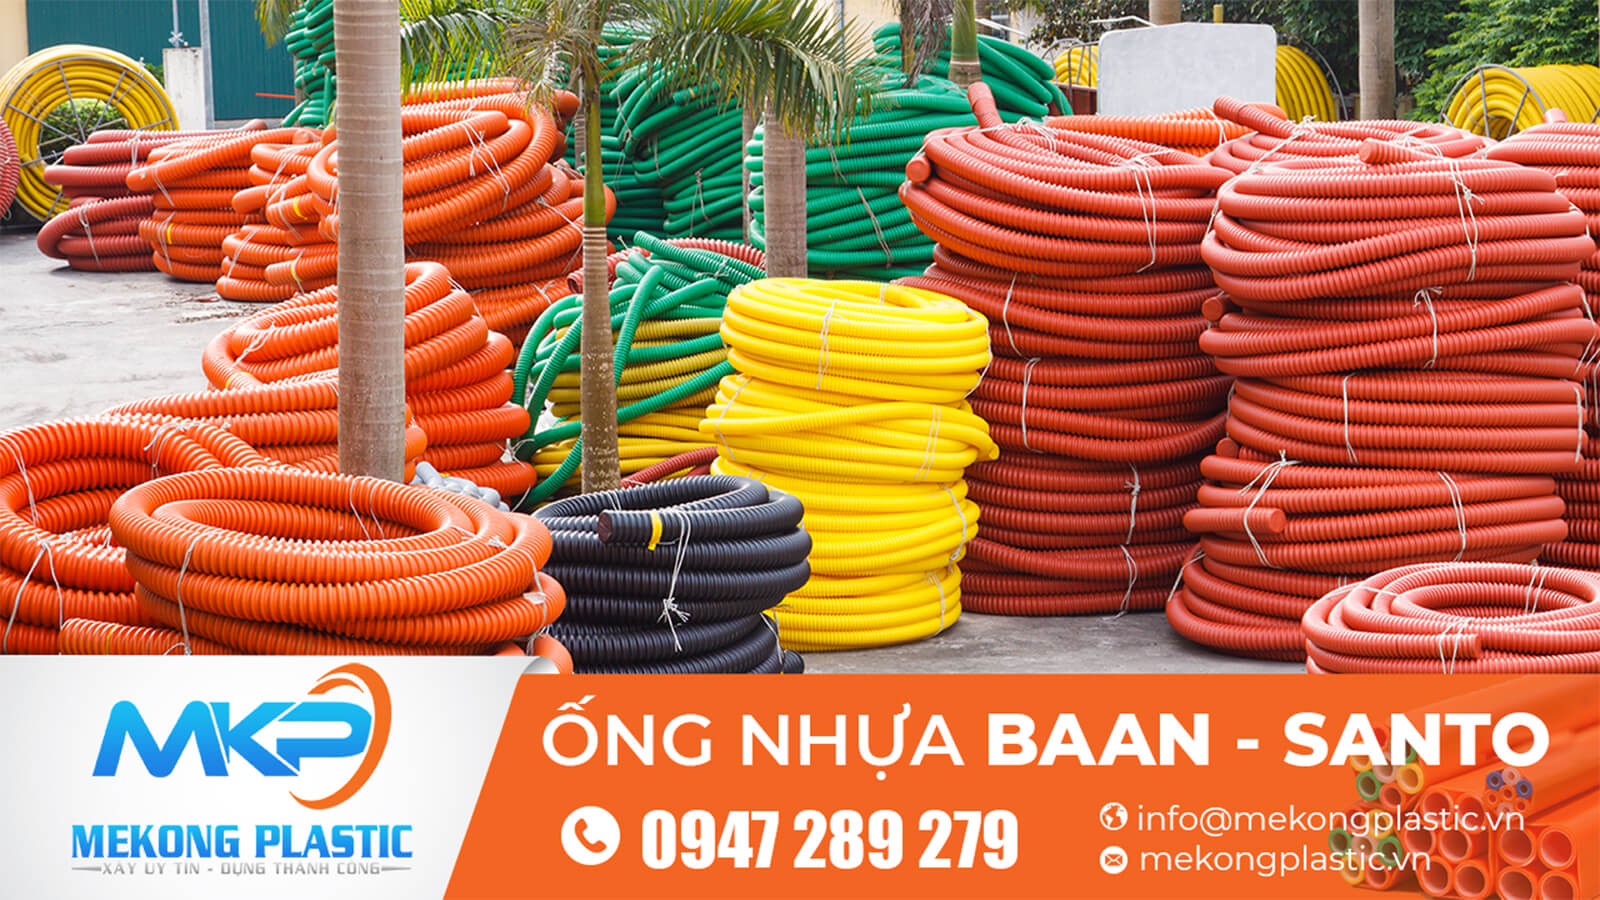 Tìm đâu cơ sở chuyên cung cấp các ống nhựa Santo- Baan chính hãng?